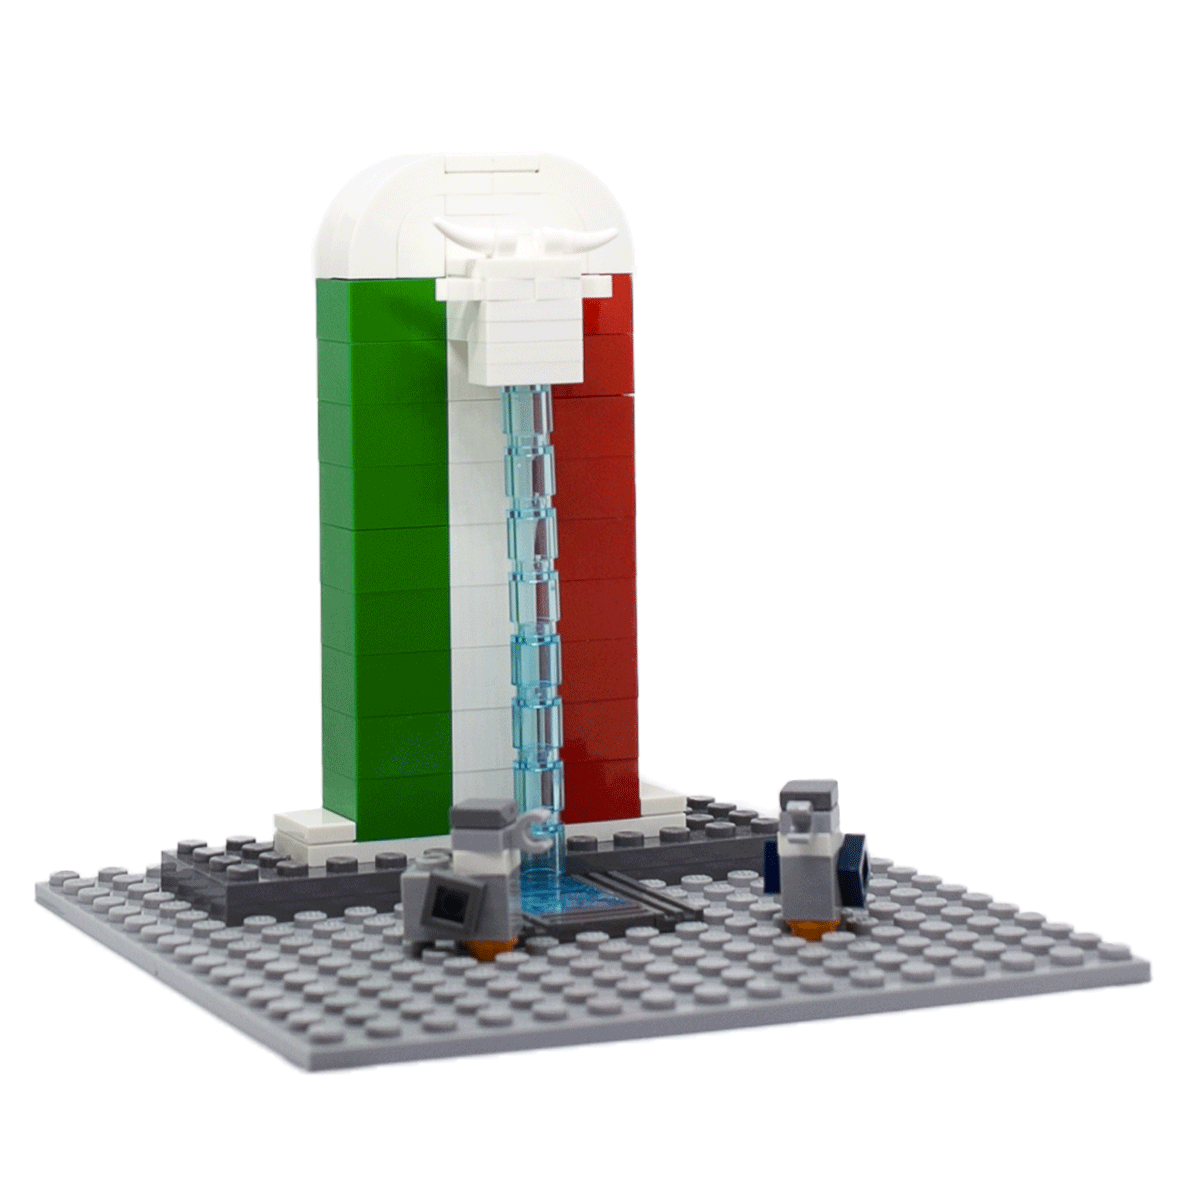 Brick-et bandiera Italia